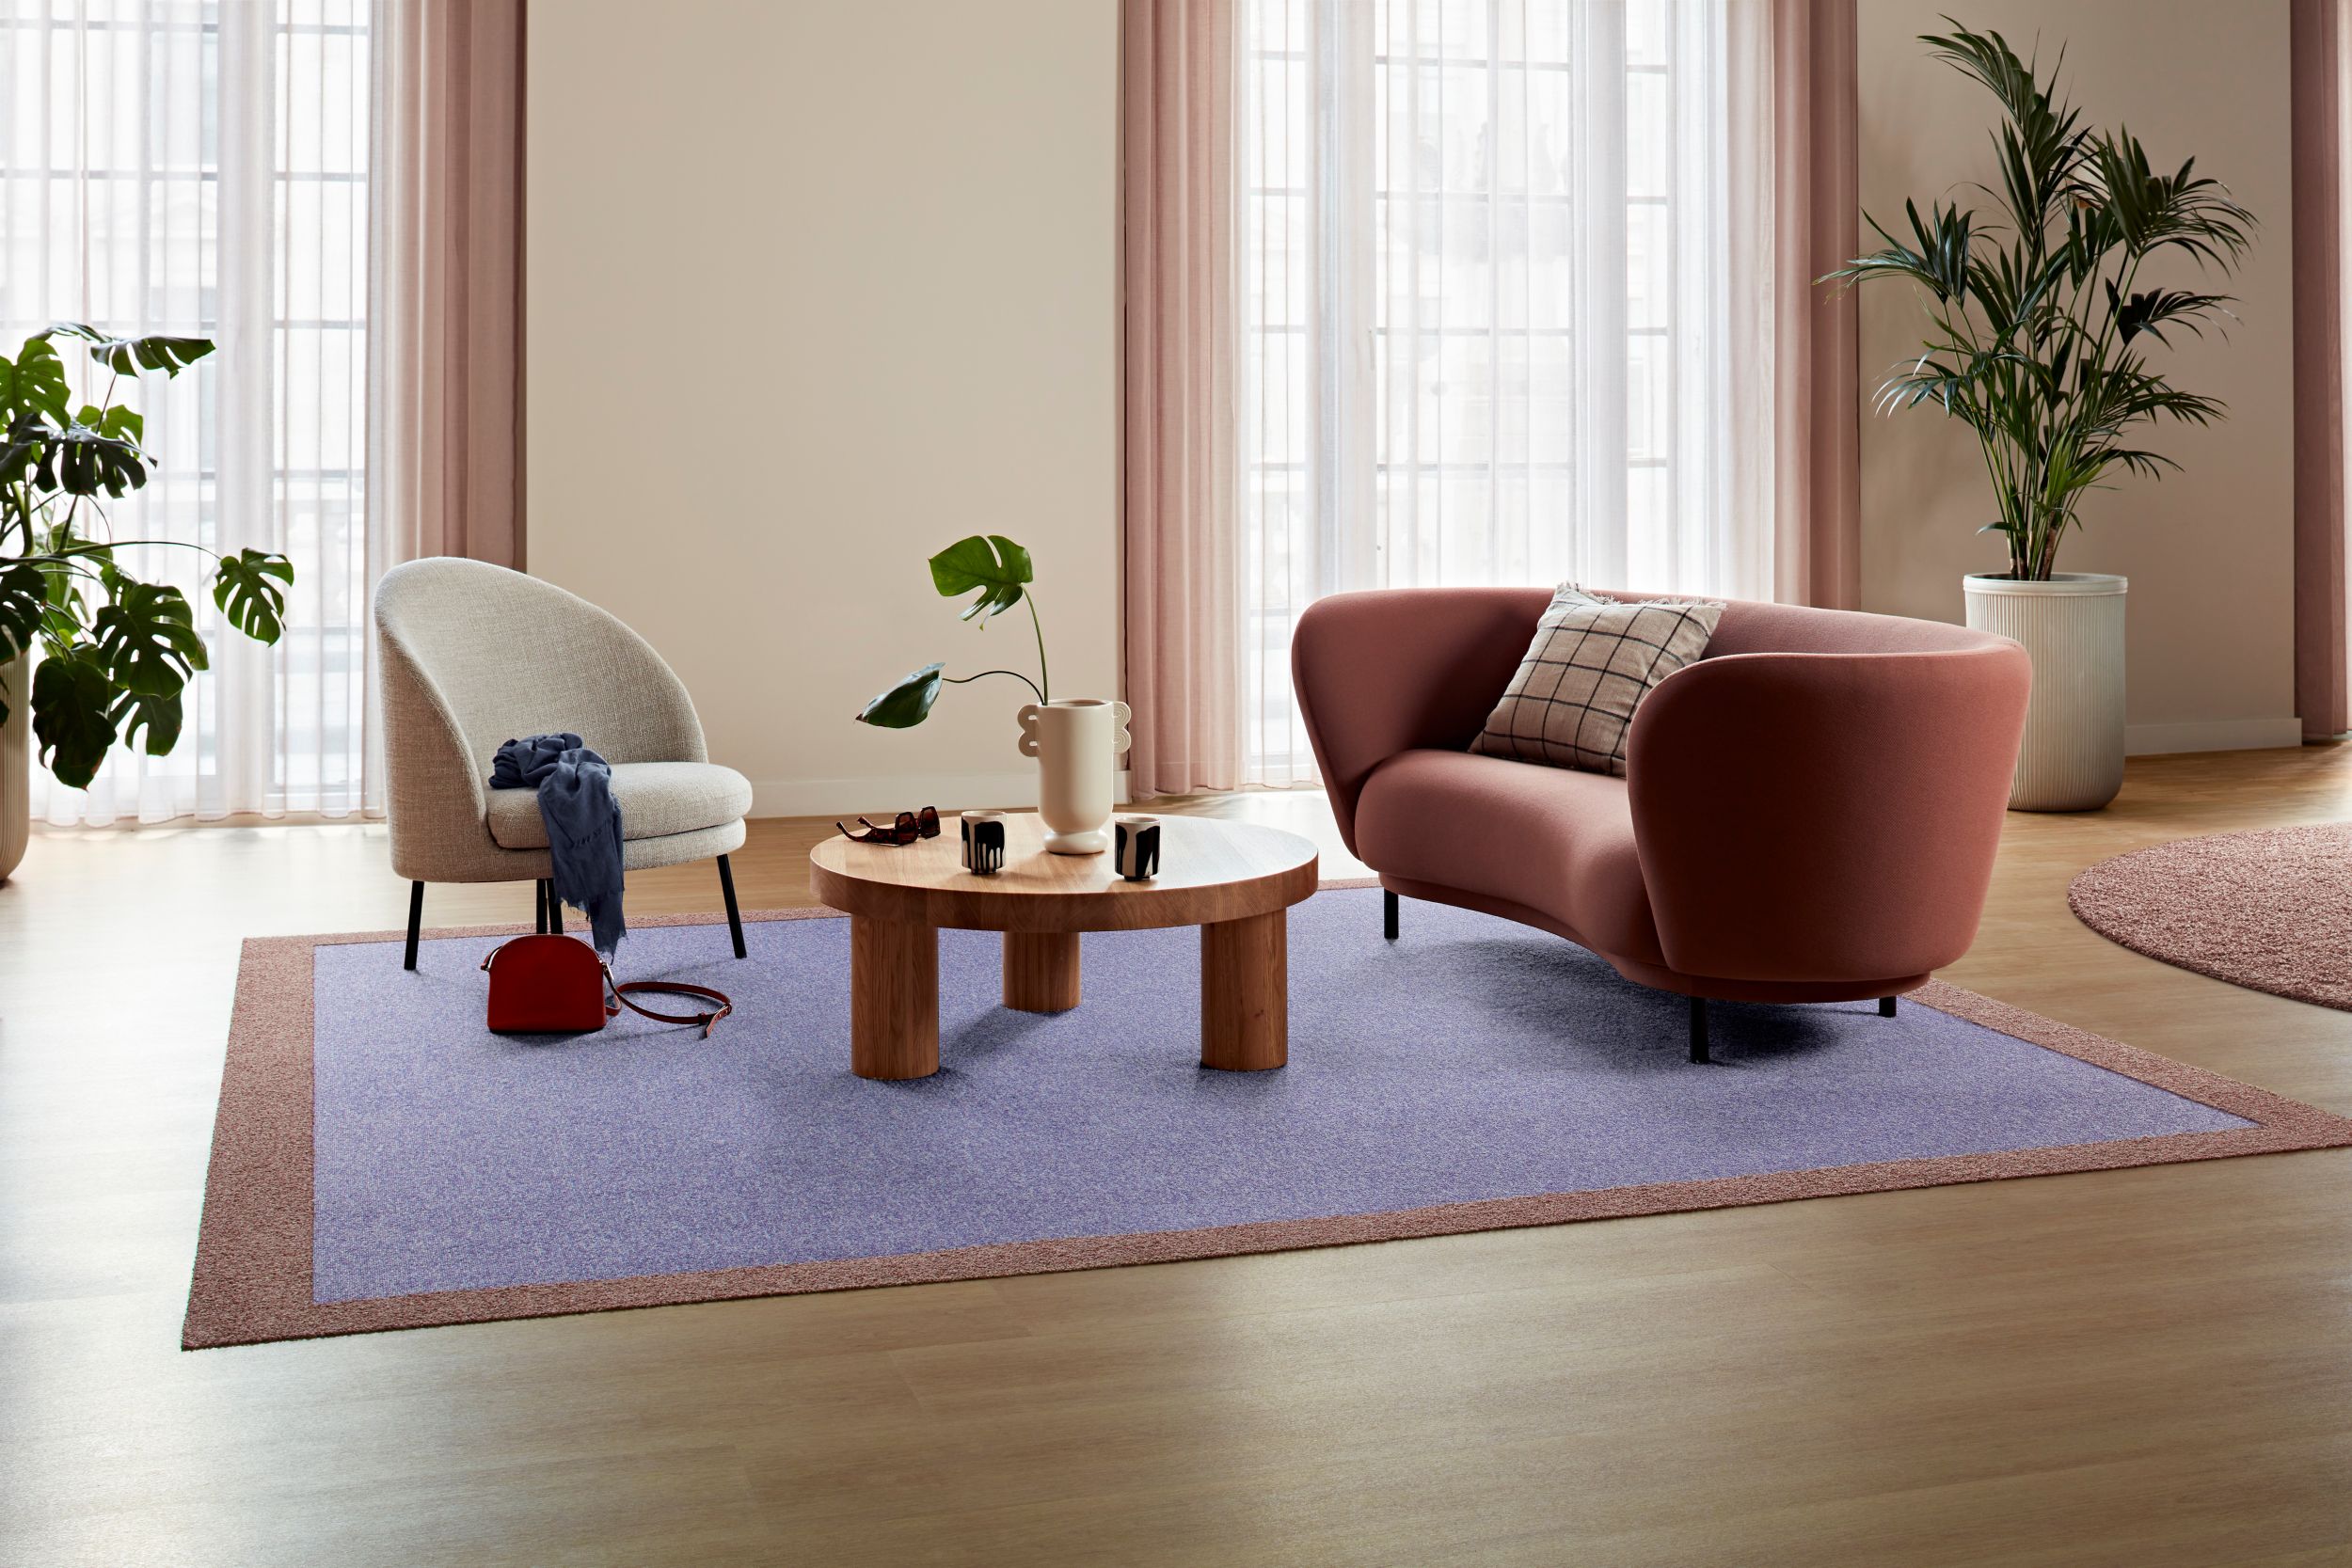 Carpet: Heuga 580 II, Lavender, Monolithic,  Touch & Tones 102, 103, Blush, Monolithic, LVT: Level Set Woodgrains, Cedar, Ashlar número de imagen 2